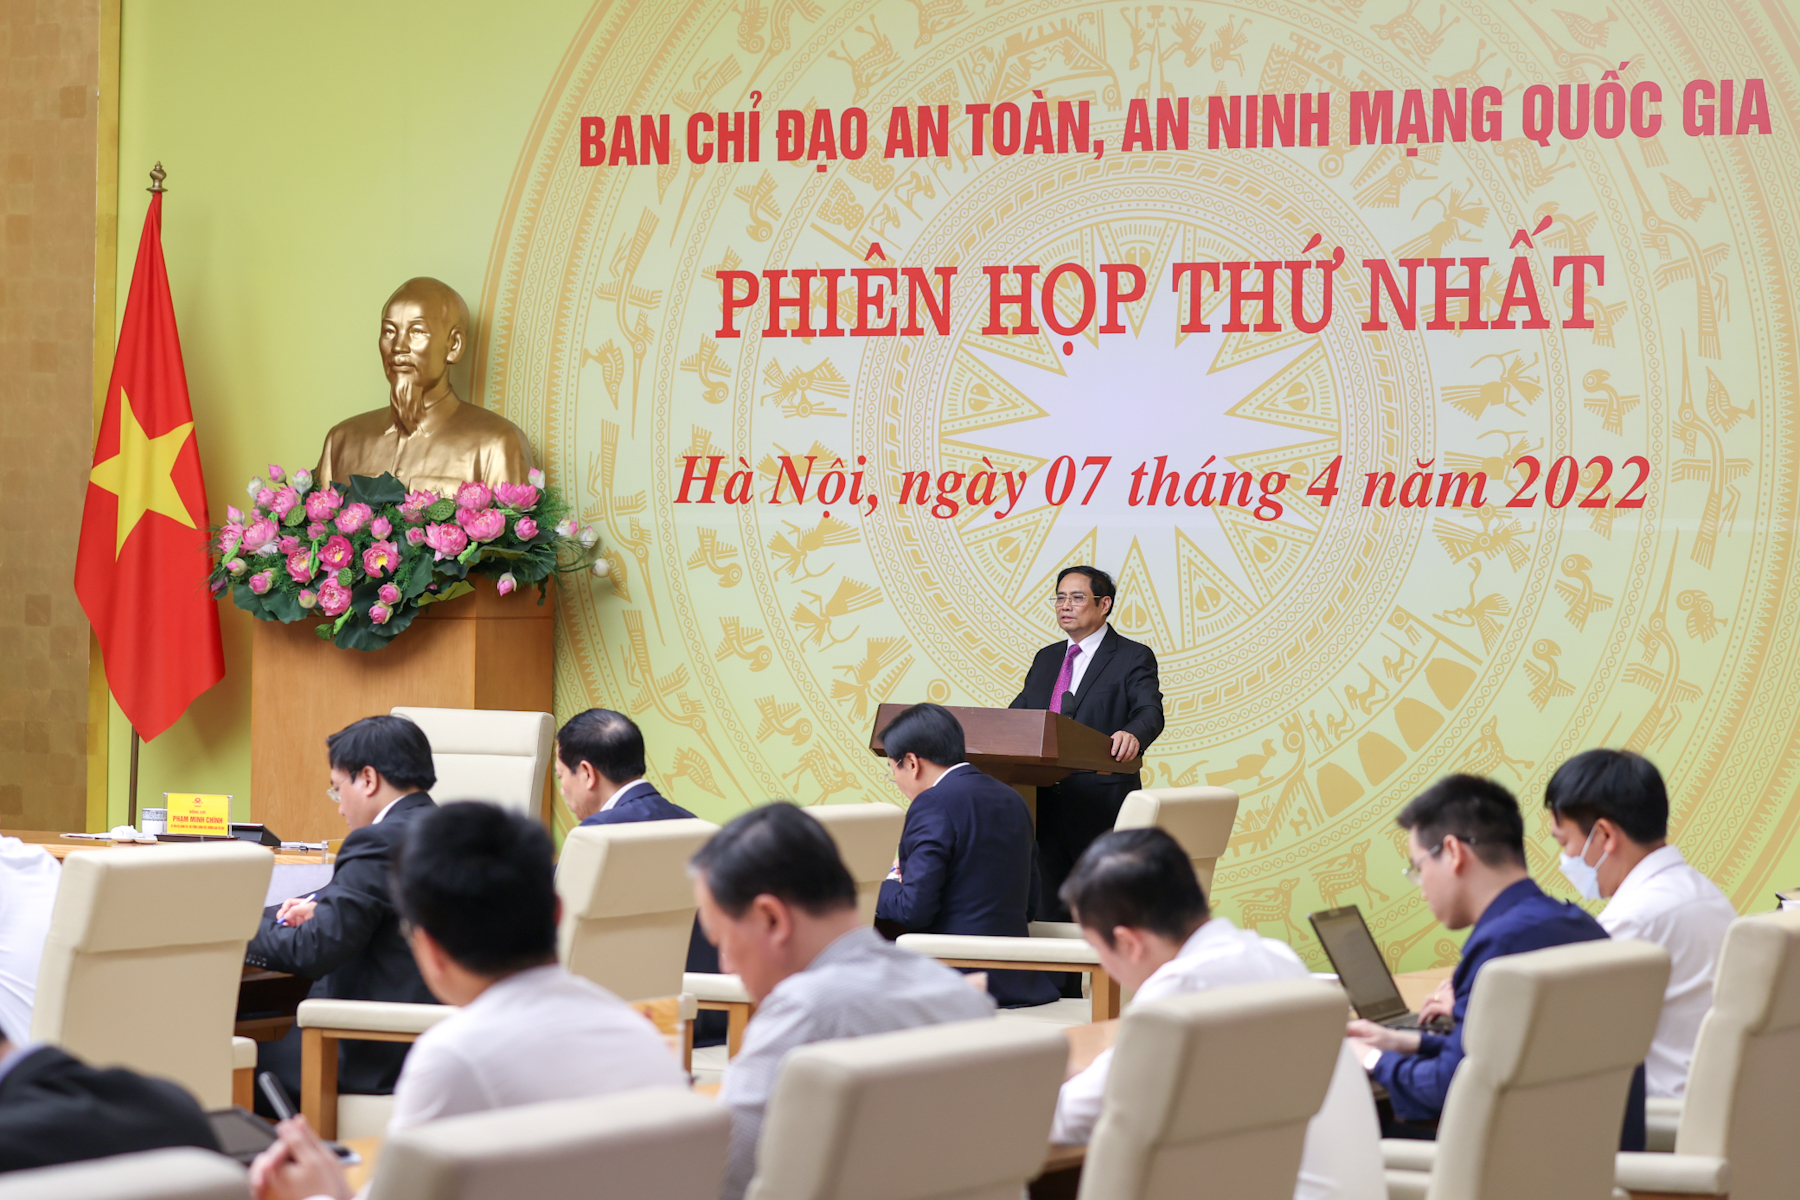 Thủ tướng Phạm Minh Chính: Chủ động bảo vệ độc lập, chủ quyền quốc gia, an toàn, an ninh trên không gian mạng - Ảnh 3.